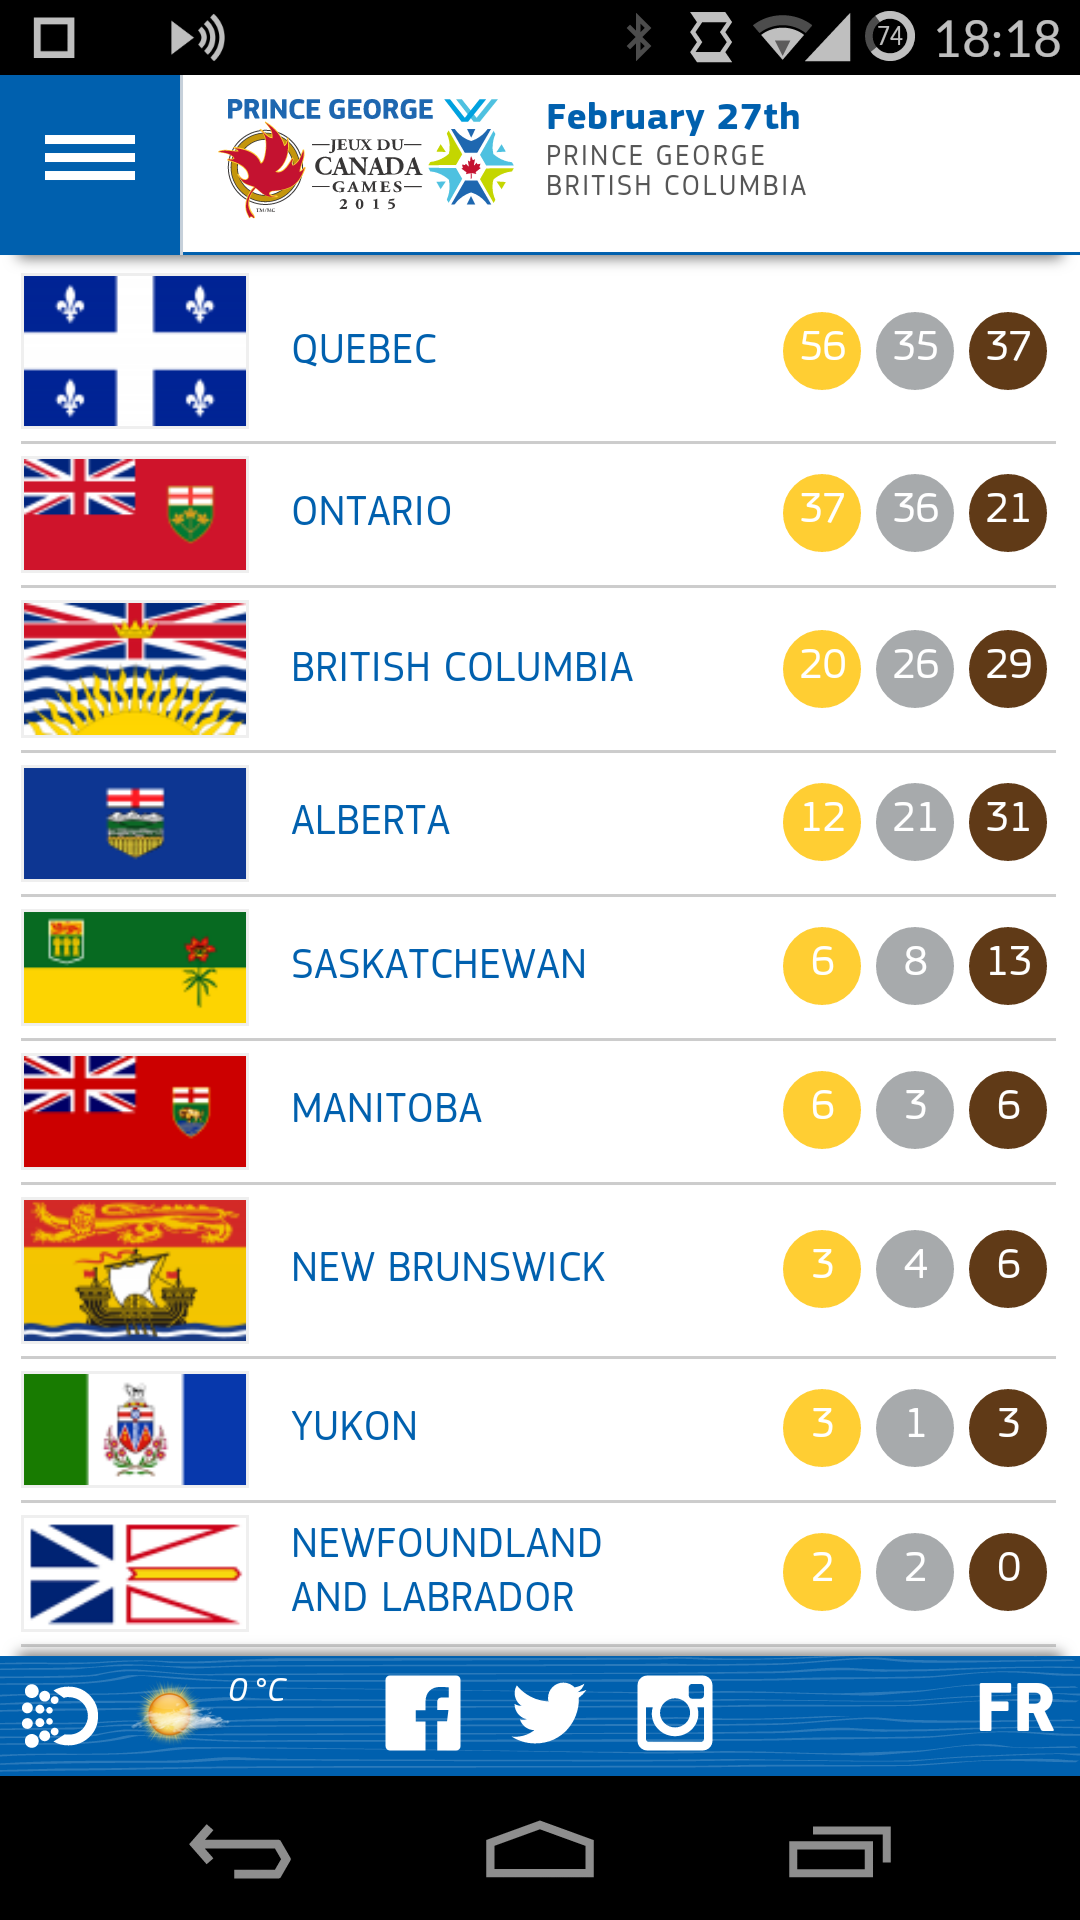 Canada Winter Games 2015 mobile site